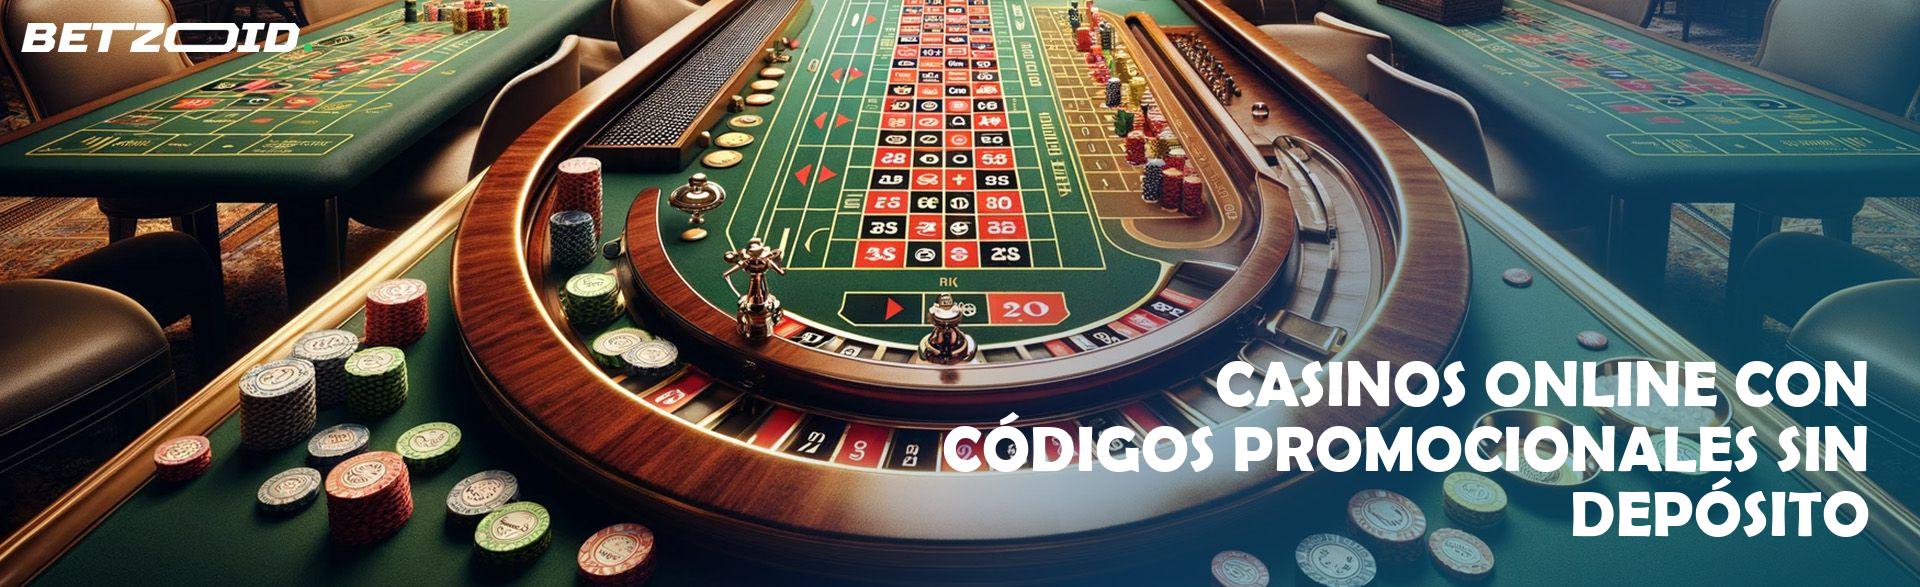 Casinos Online con Códigos Promocionales sin Depósito.